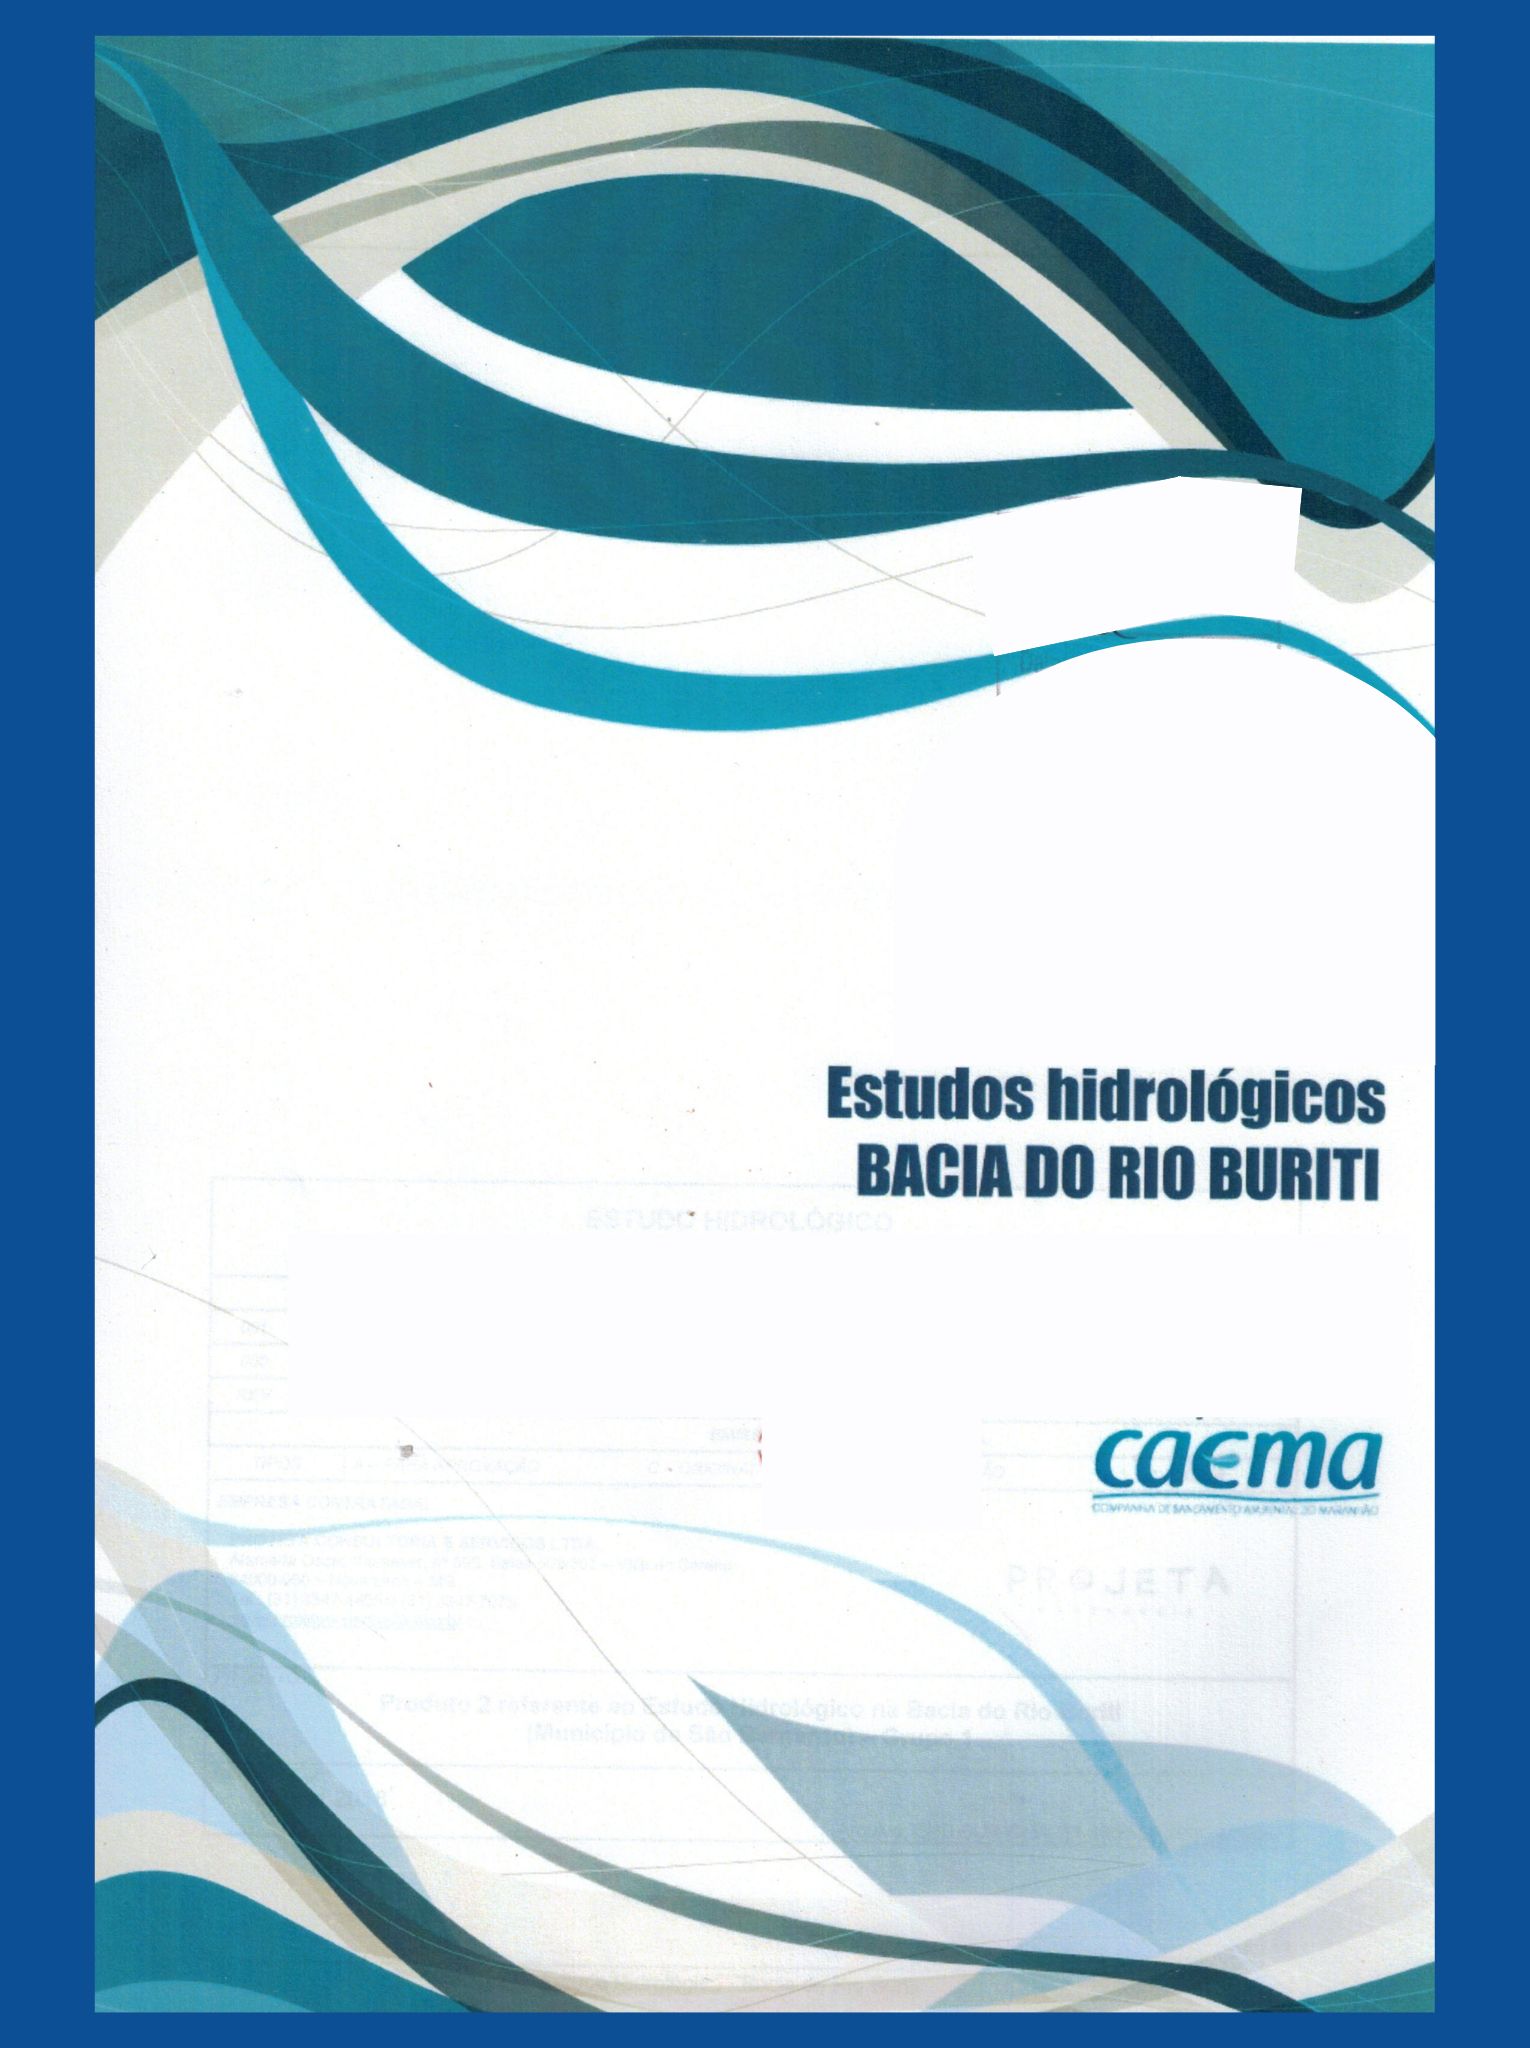 Imagem da capa do Estudo com informações de título e autoria.